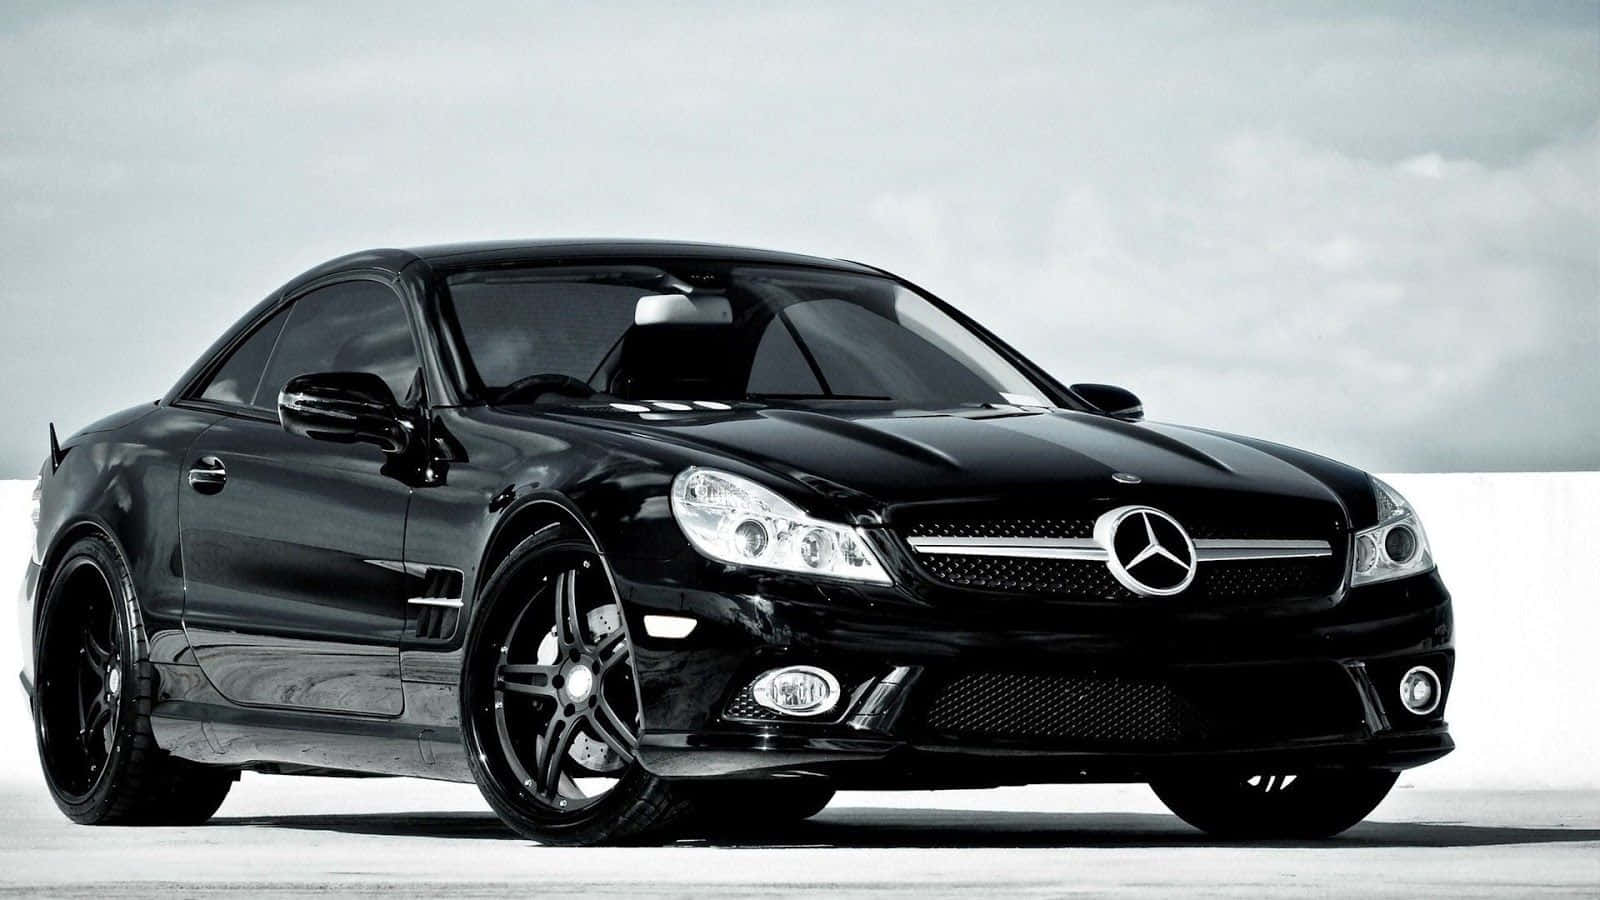 Fondode Pantalla Mercedes Benz S Class En Blanco Y Negro. Fondo de pantalla